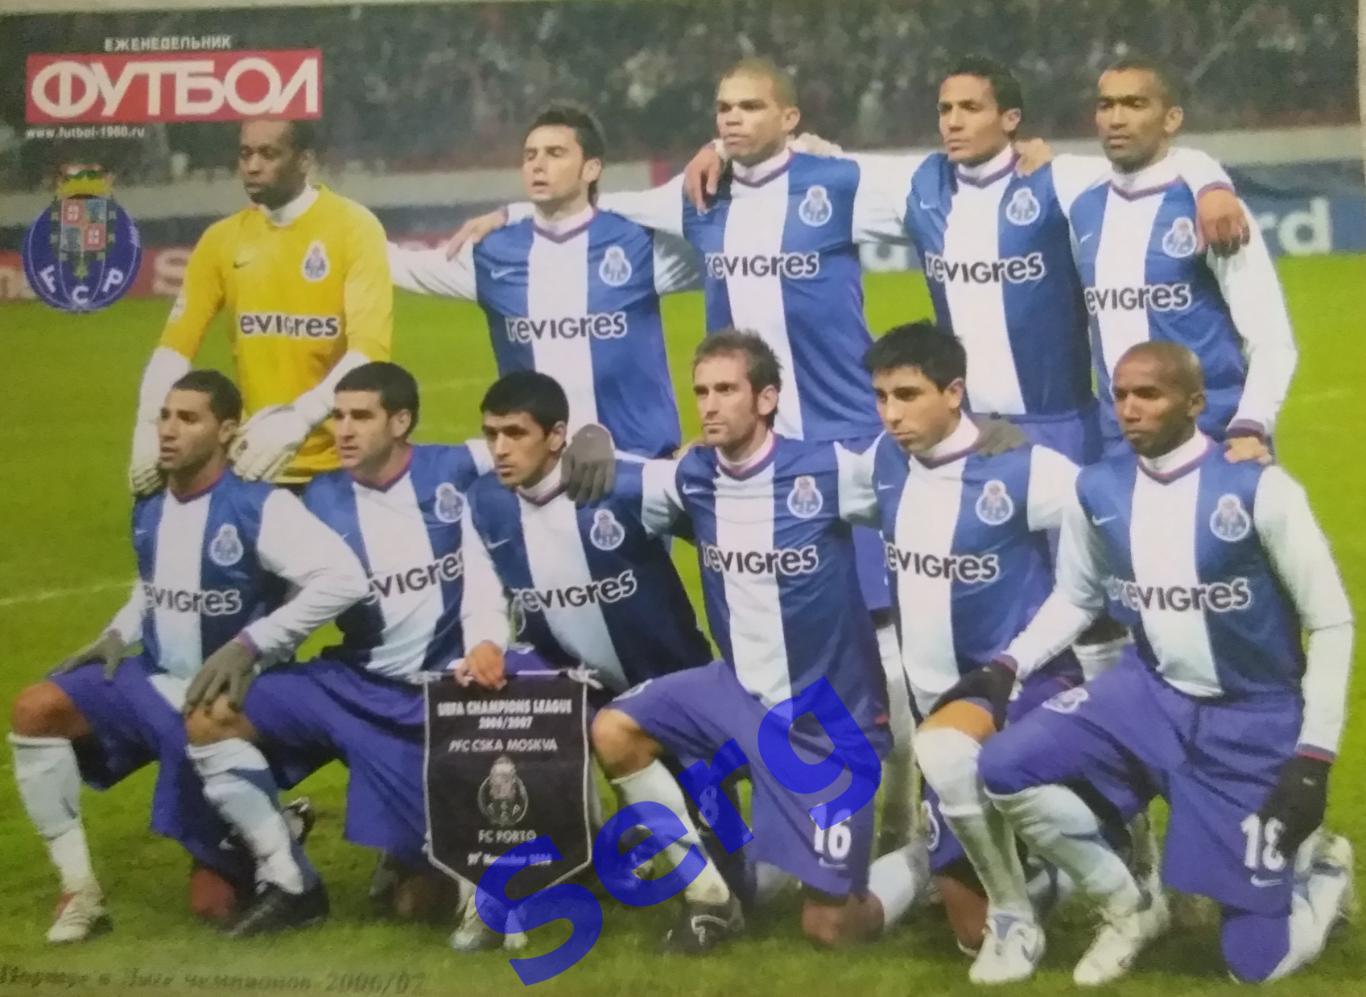 Спецвыпуск Великие клубы Португалии №5 2008 год от еженедельника Футбол 1